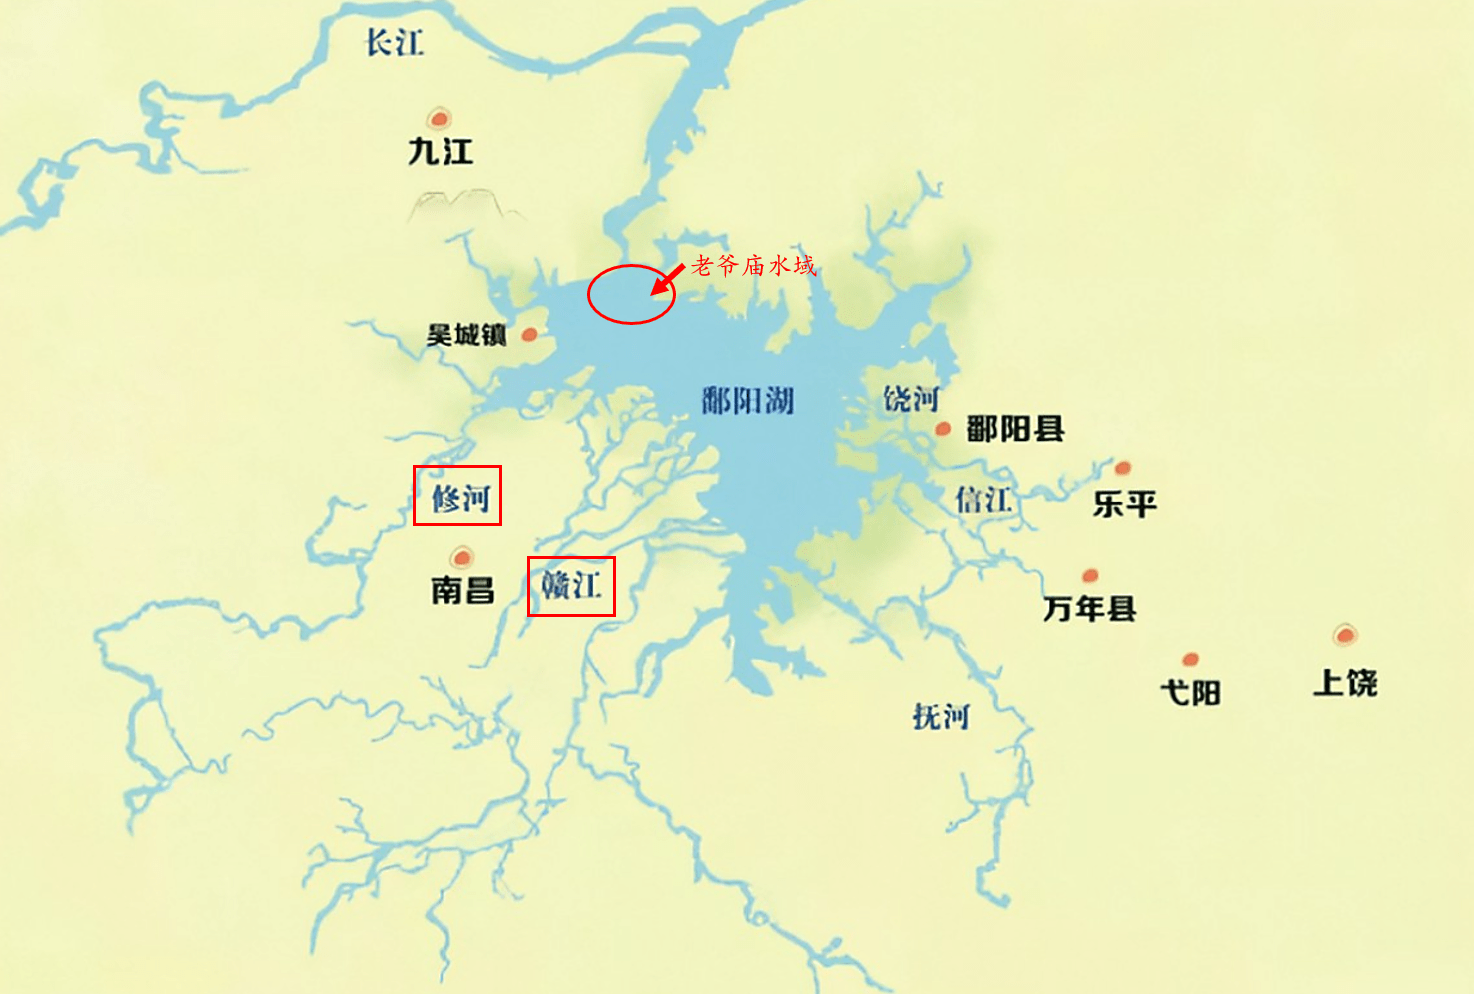 鄱阳湖的秘密60年沉船100多艘老爷庙水域暗藏危机